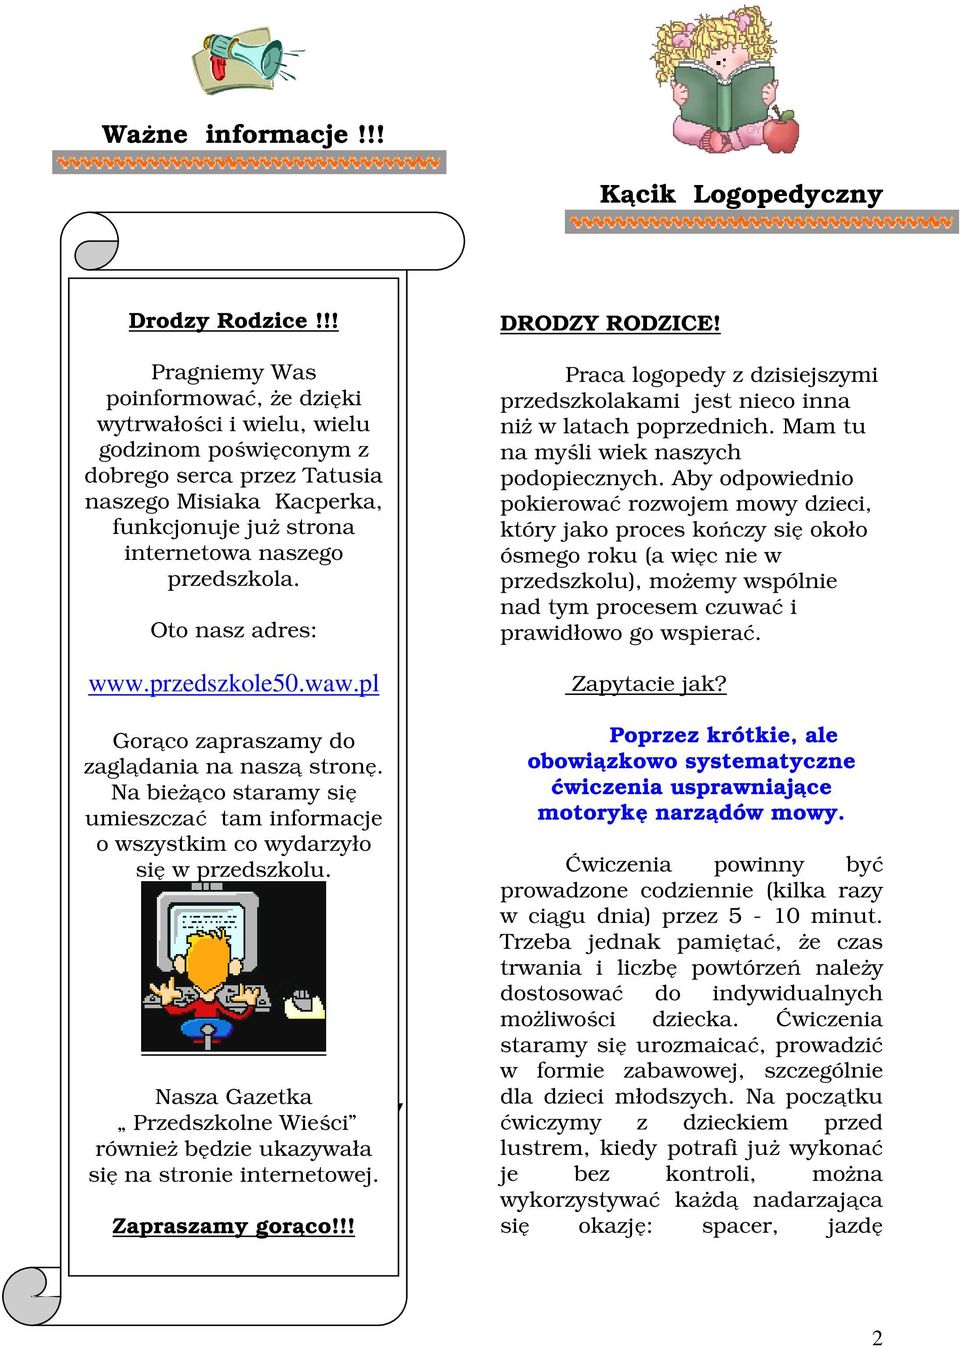 Oto nasz adres: www.przedszkole50.waw.pl Gorąco zapraszamy do zaglądania na naszą stronę. Na bieżąco staramy się umieszczać tam informacje o wszystkim co wydarzyło się w przedszkolu.